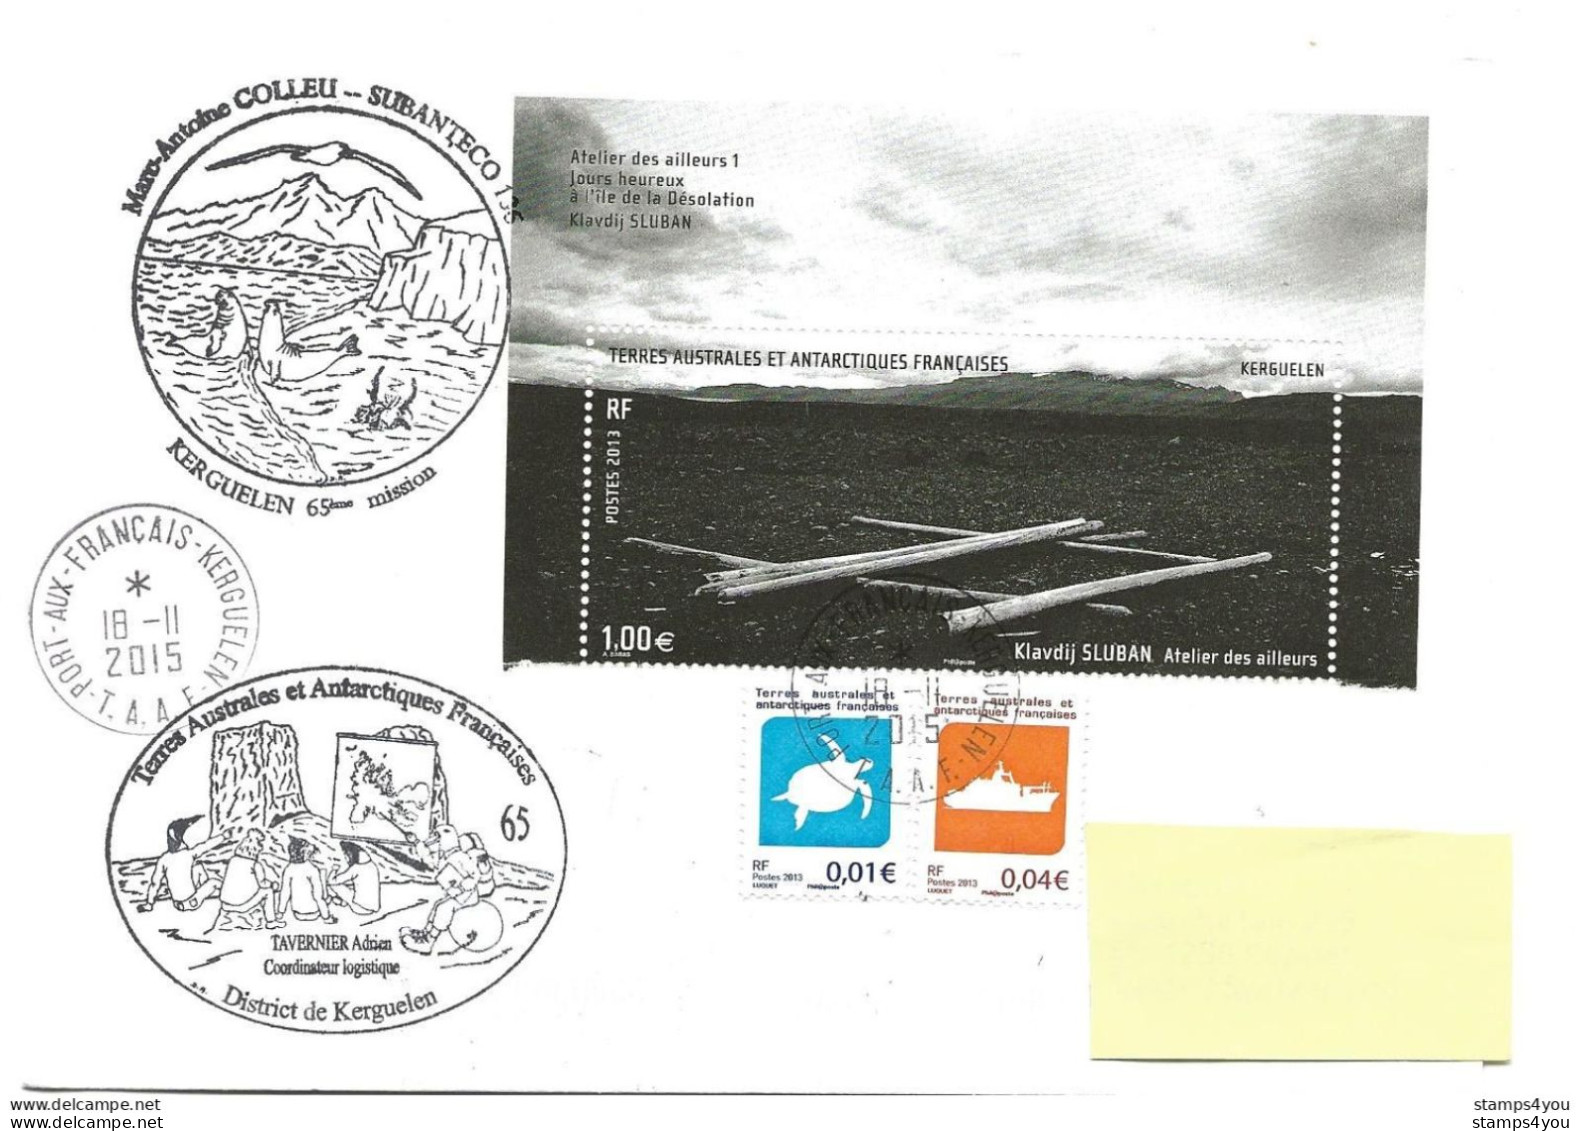 440 - 34 - Enveloppe TAAF Kerguelen - Cachets Illustrés Mission 65 - 2015 - Forschungsstationen